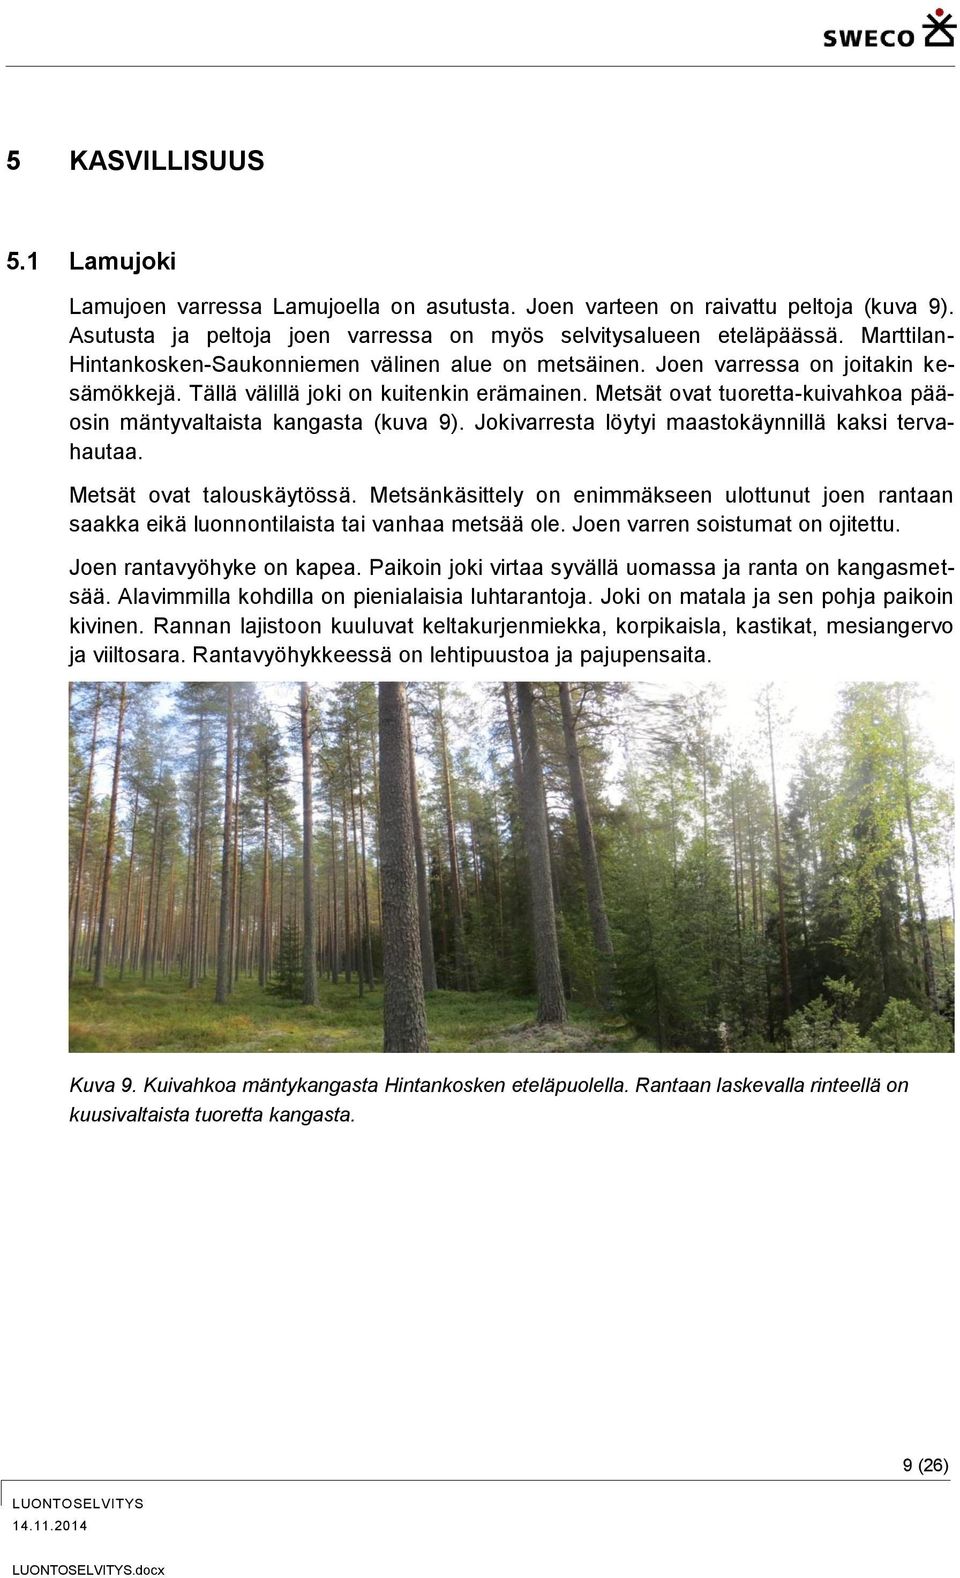 Metsät ovat tuoretta-kuivahkoa pääosin mäntyvaltaista kangasta (kuva 9). Jokivarresta löytyi maastokäynnillä kaksi tervahautaa. Metsät ovat talouskäytössä.